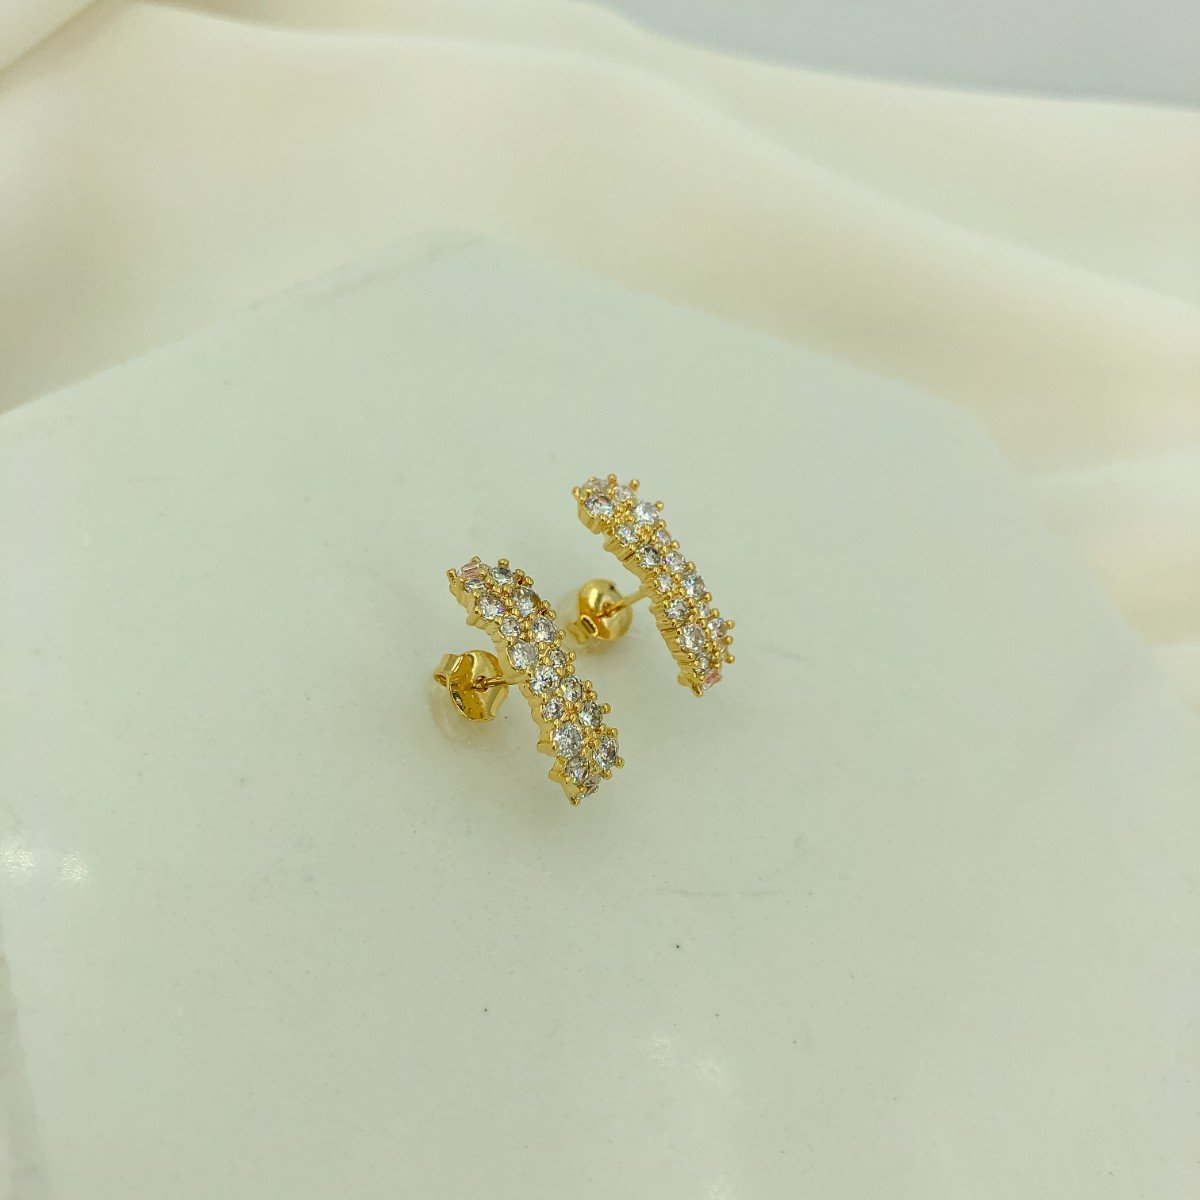 Brinco Ear Hook 2 Fileiras Cravejada de Zircônias Cristal Banhada em Ouro 18k